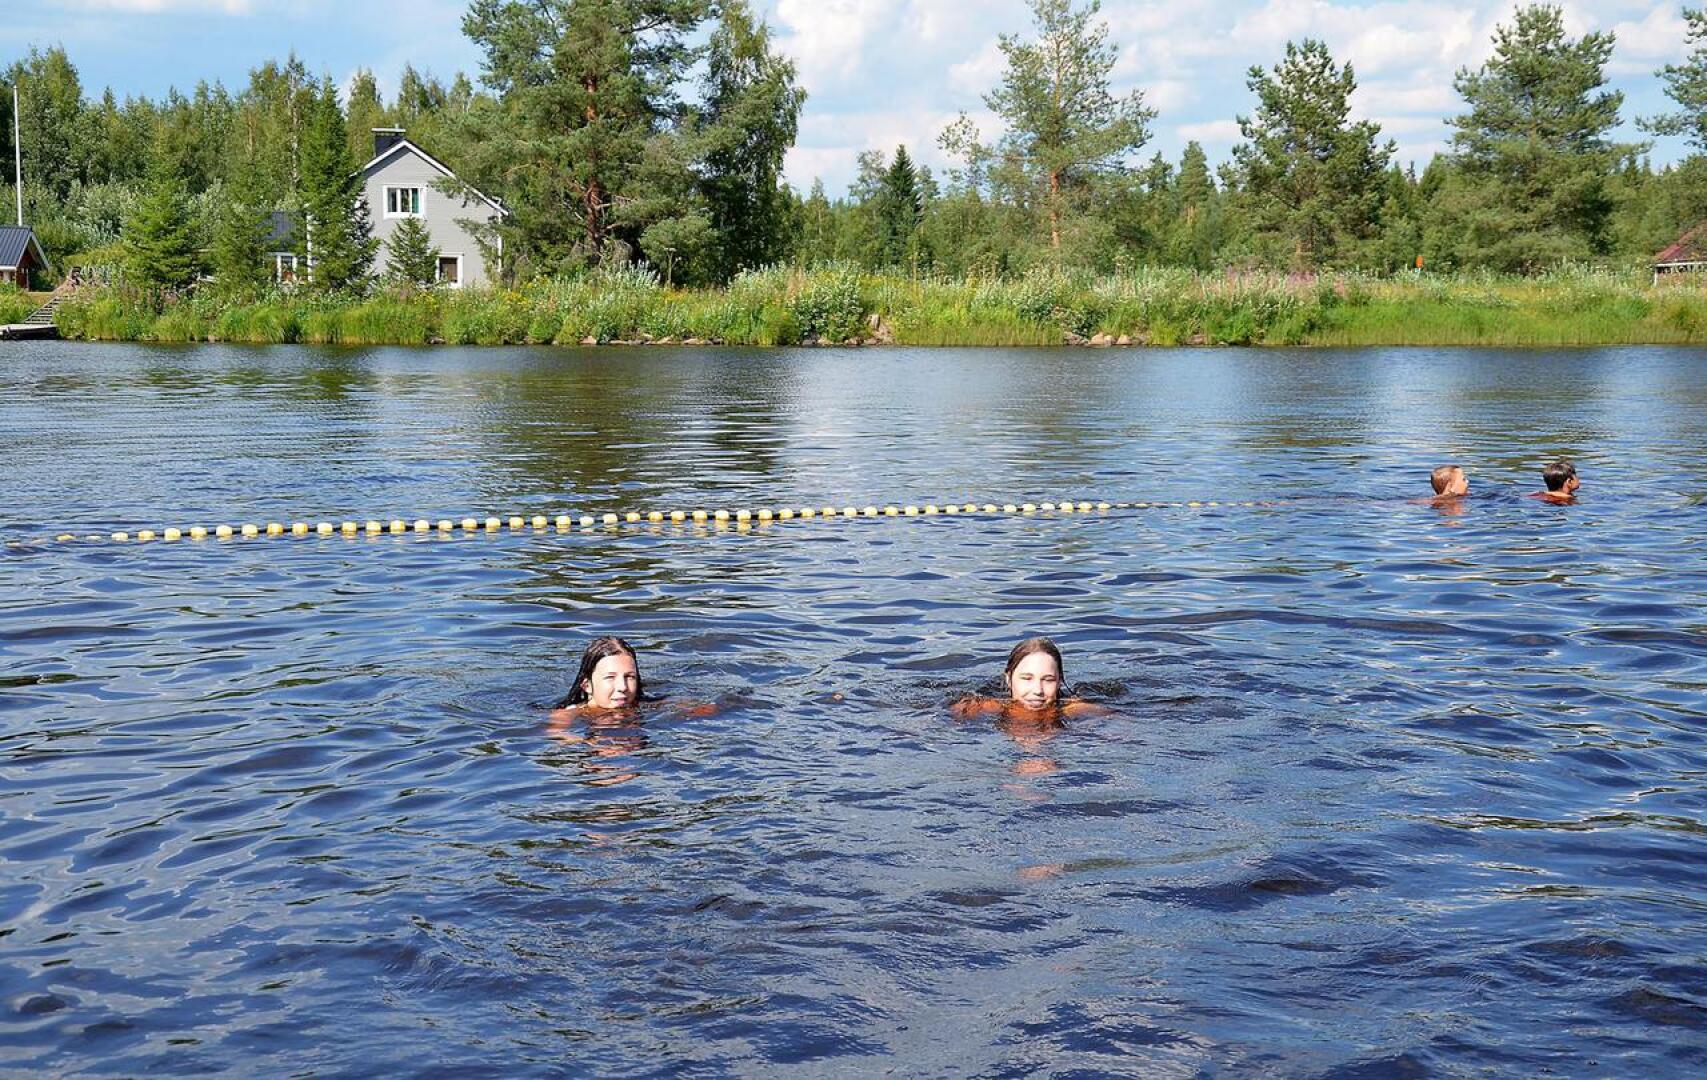 Sani Paananen ja Jane Alasuutari olivat uimassa Ylivieskan Hamarilla viime keskiviikkona 25. heinäkuuta, jolloin mitattiin tähän mennessä Ylivieskan kesän korkein lämpötila 32,2 astetta.
